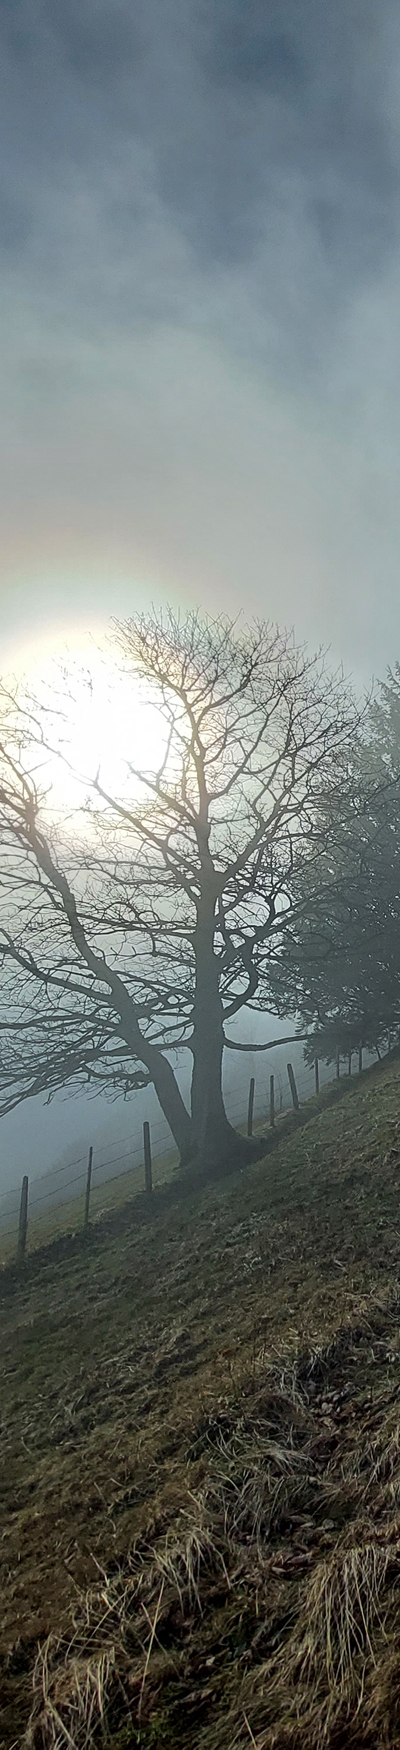 Simeliberg im Nebel